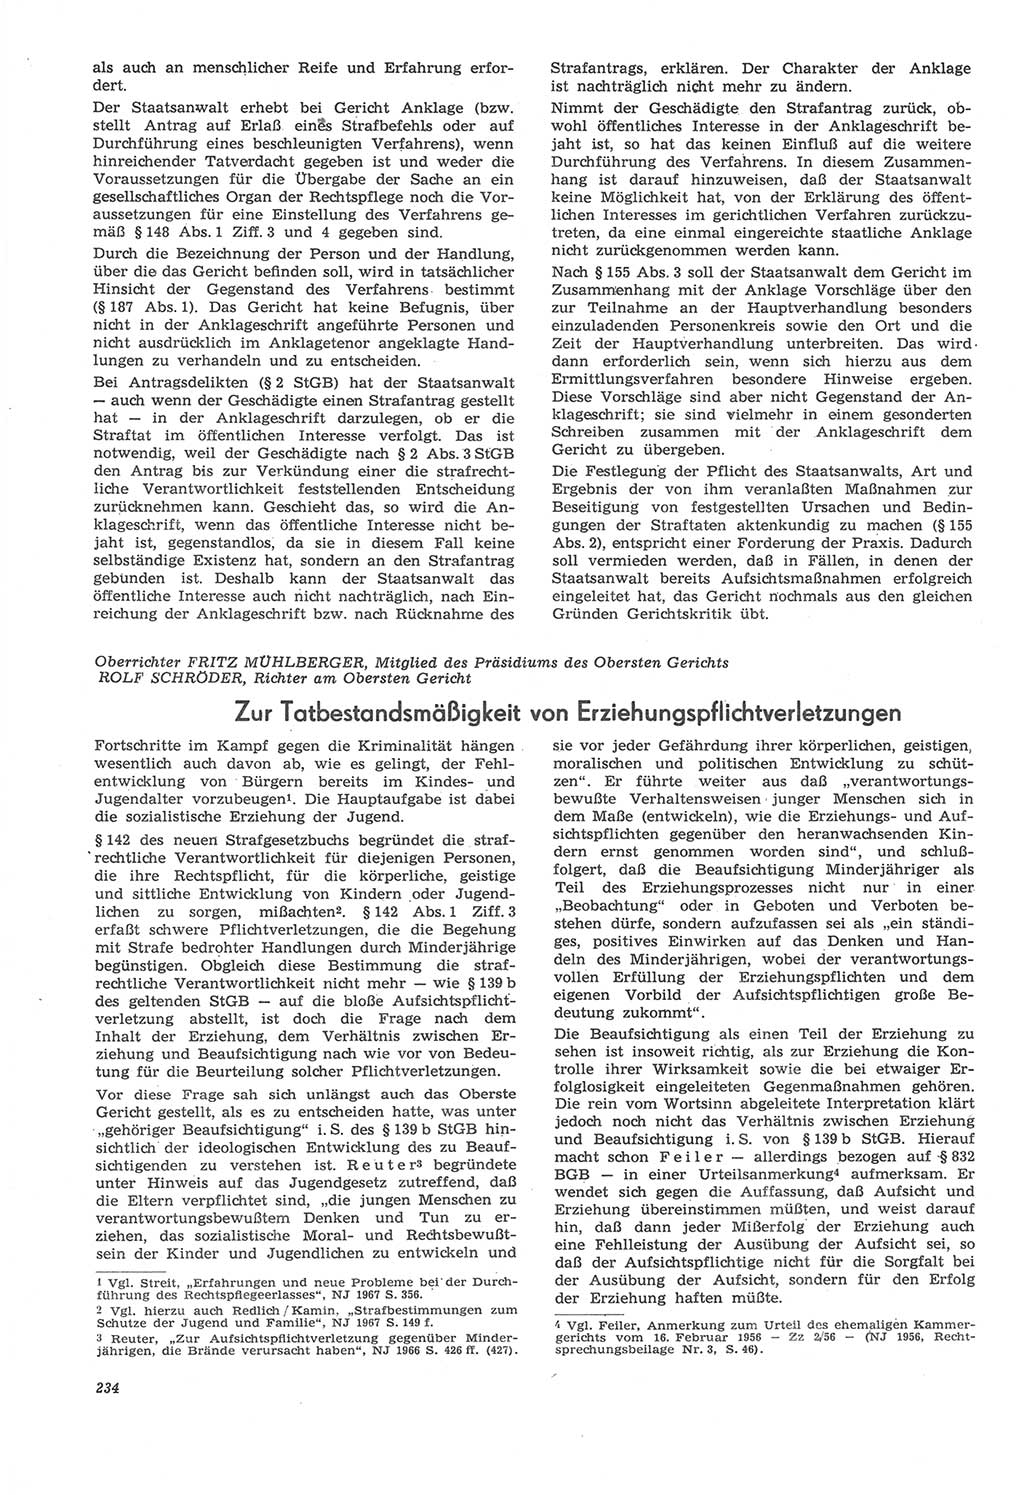 Neue Justiz (NJ), Zeitschrift für Recht und Rechtswissenschaft [Deutsche Demokratische Republik (DDR)], 22. Jahrgang 1968, Seite 234 (NJ DDR 1968, S. 234)